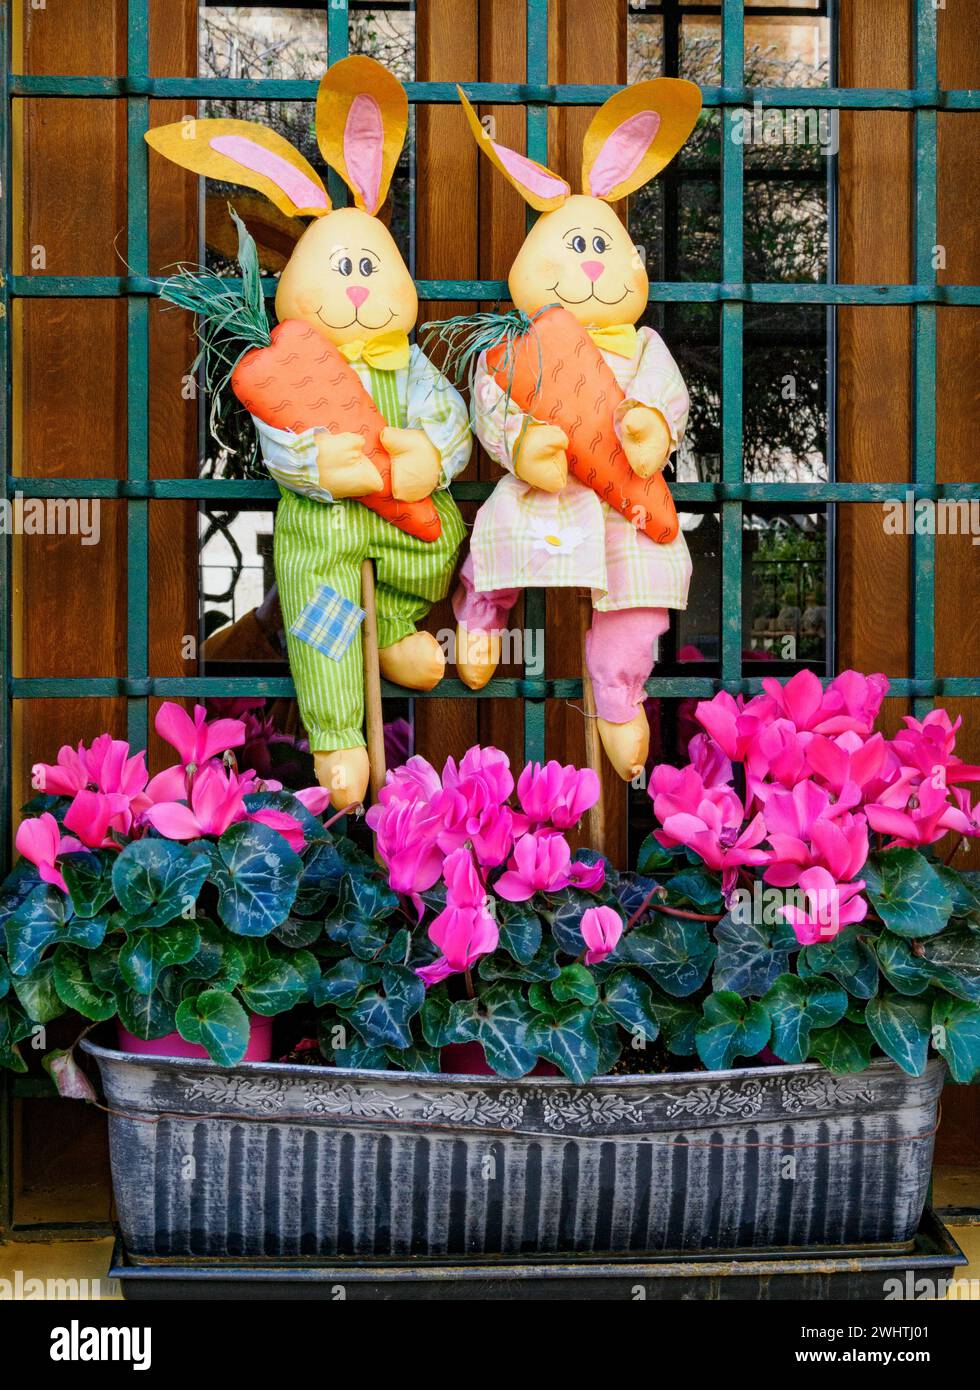 Fenêtre d'une maison à Majorque Espagne décorée de lapins de Pâques et d'une boîte de fenêtre remplie de fleurs de cyclamen rose Banque D'Images